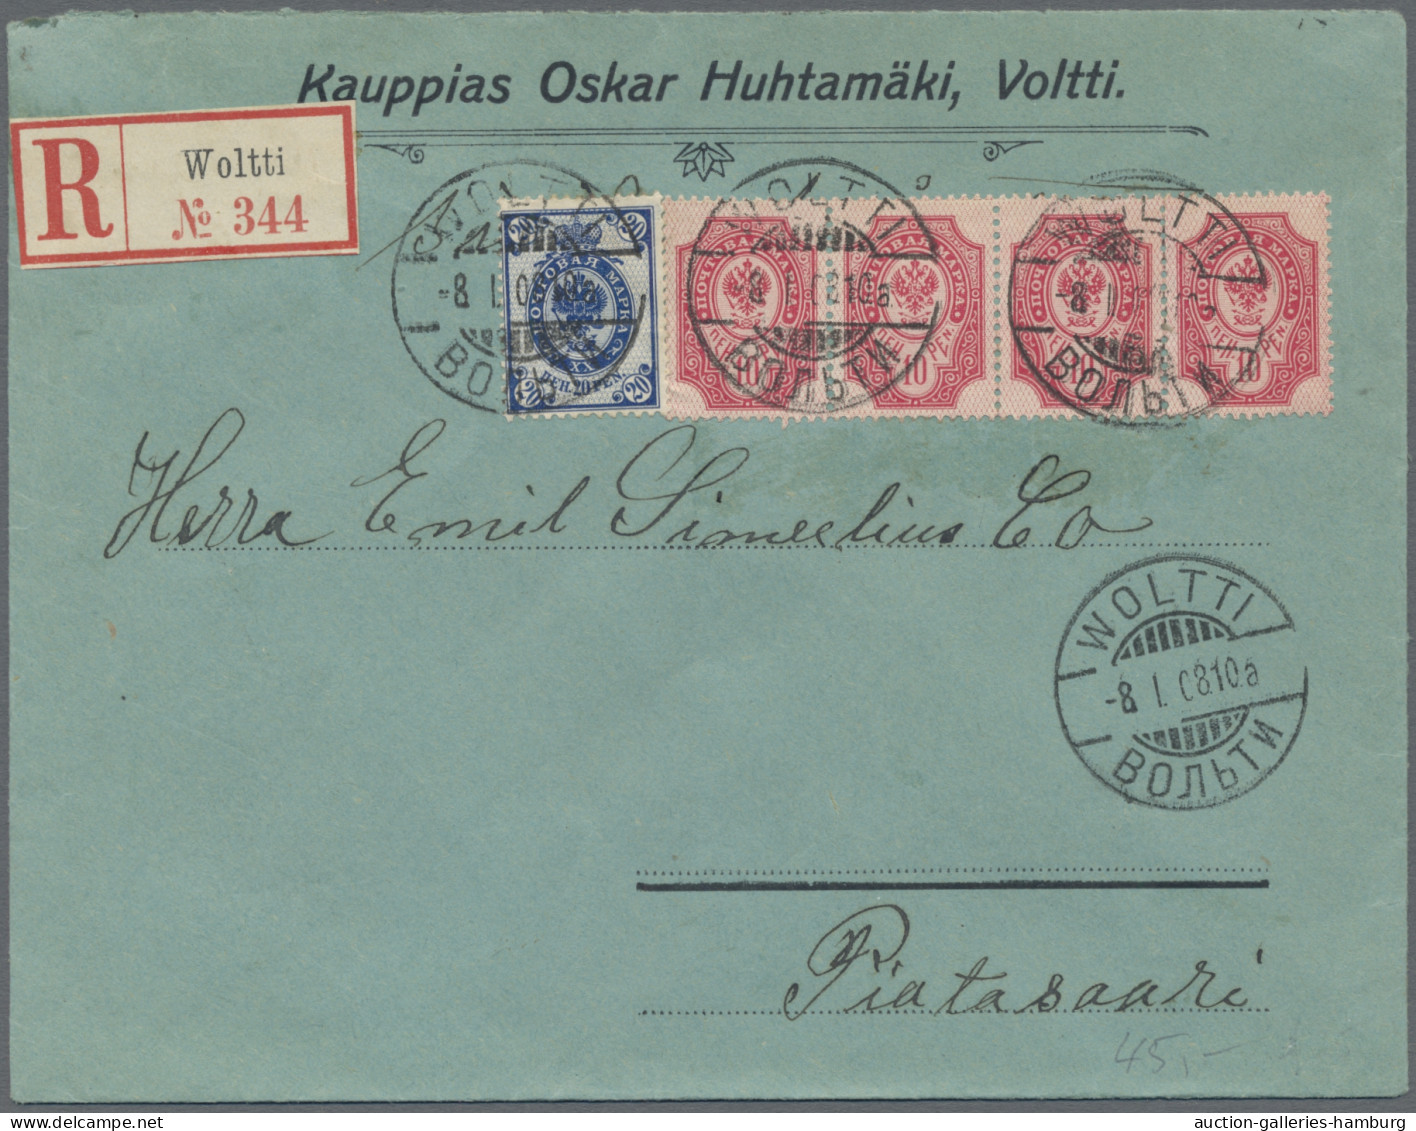 Finland: 1895-1955, Partie aus ca. 60 Belegen / Karten, inkl. Schiffspost, Einsc